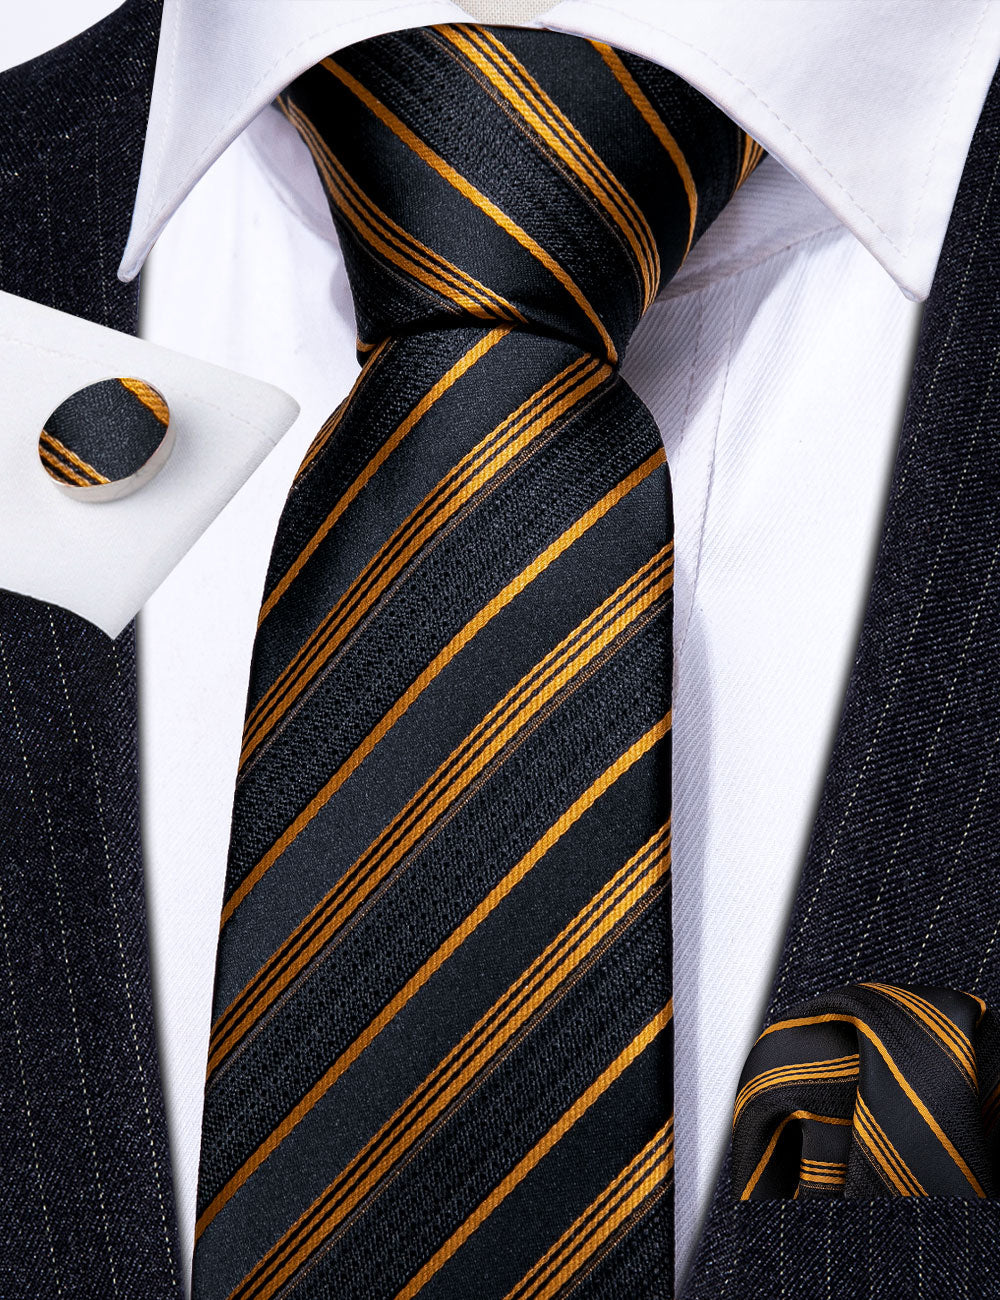 Men’s Silk Coordinated Tie Set - Gold Black Stripe (6020)